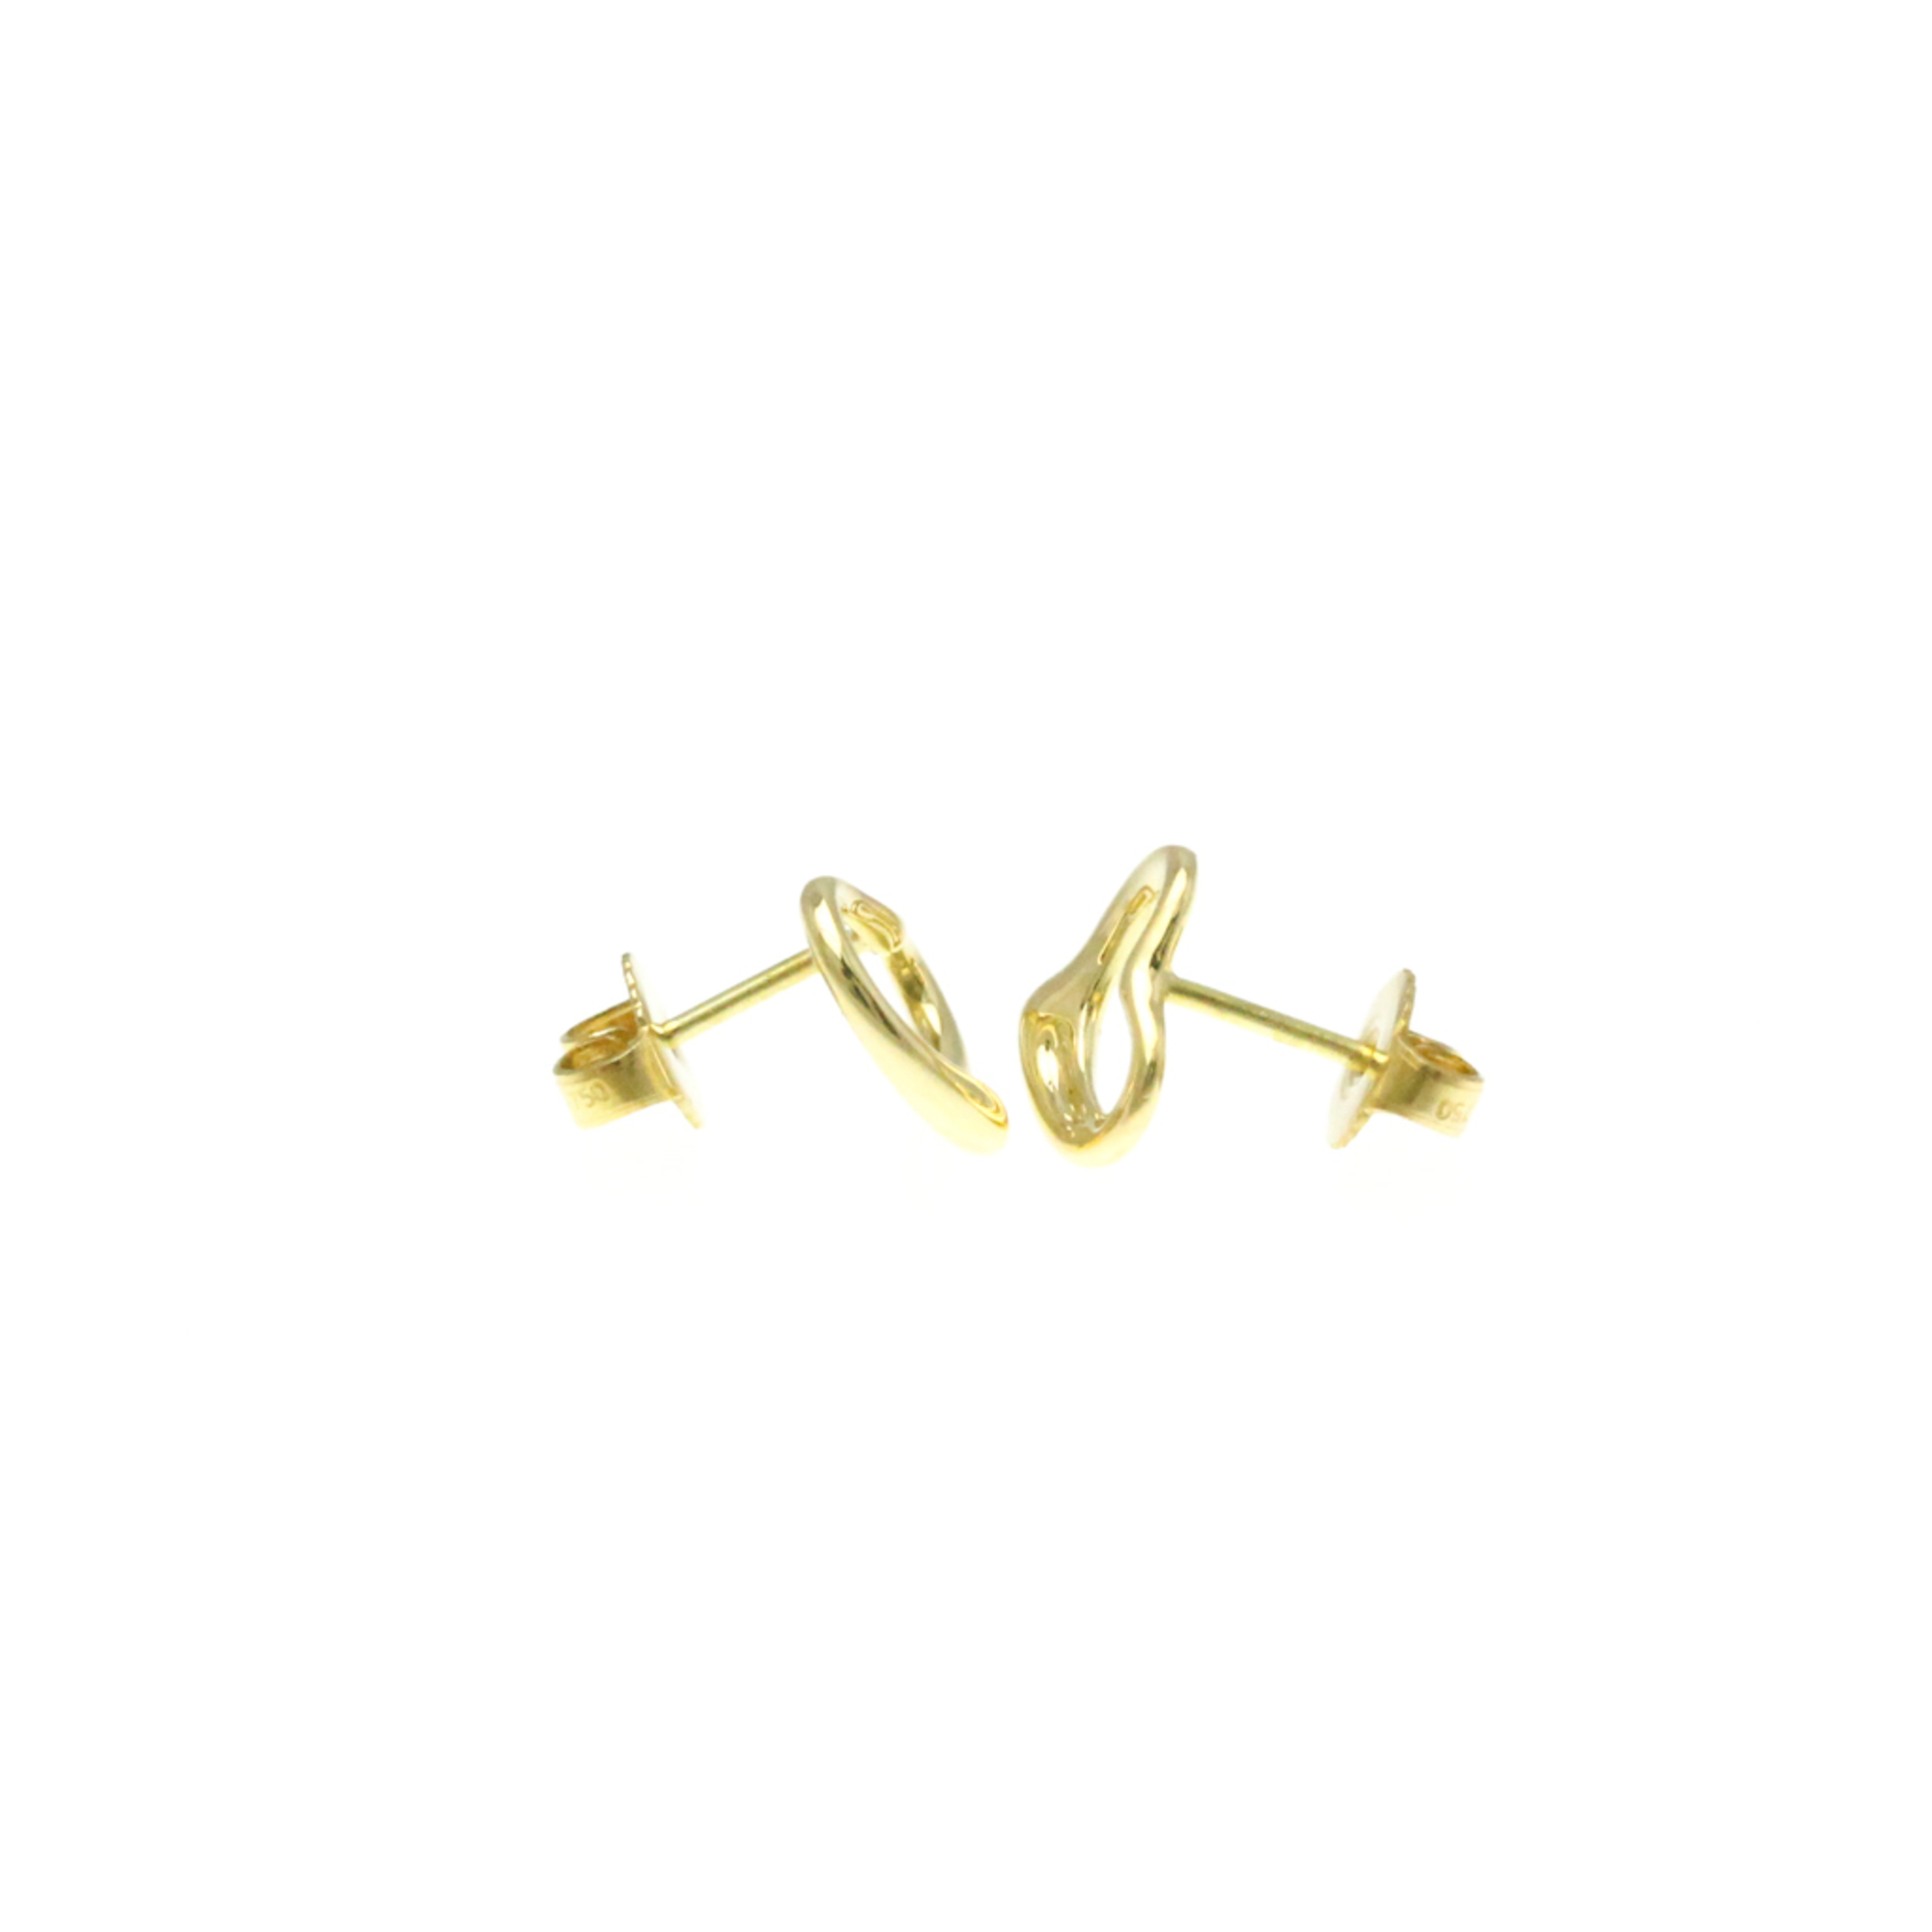 Tiffany Open Heart Yellow Gold (18K) Stud Earrings